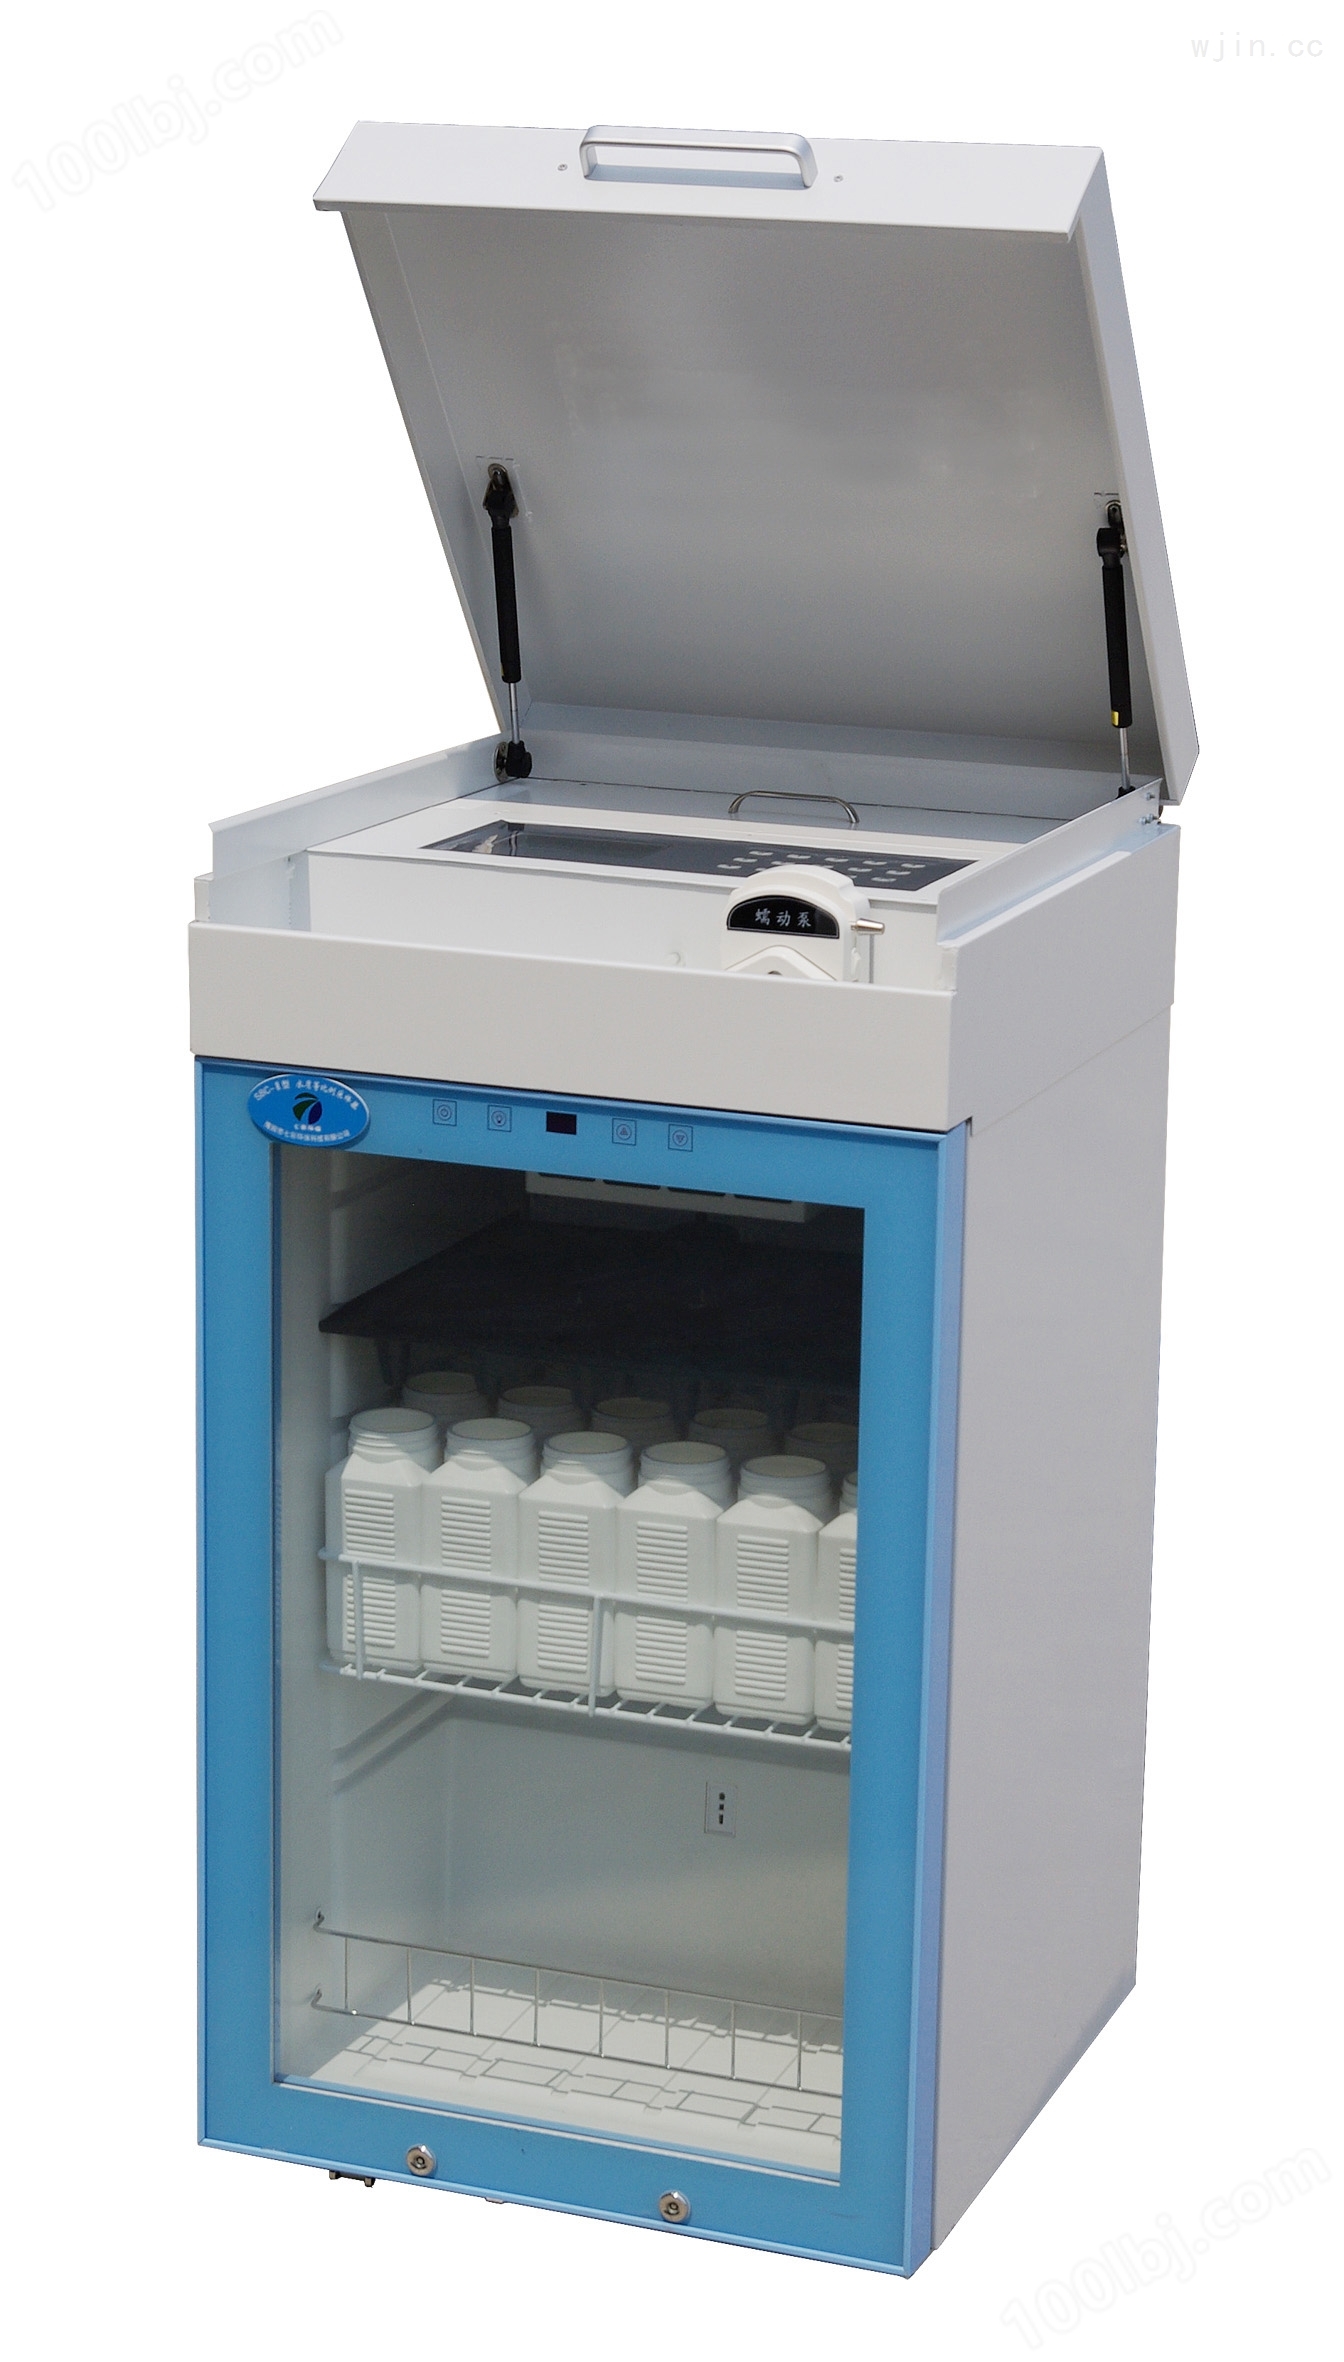 BR-8000智能型在线式等比例水质采样器 恒温冷藏自动水样取样器